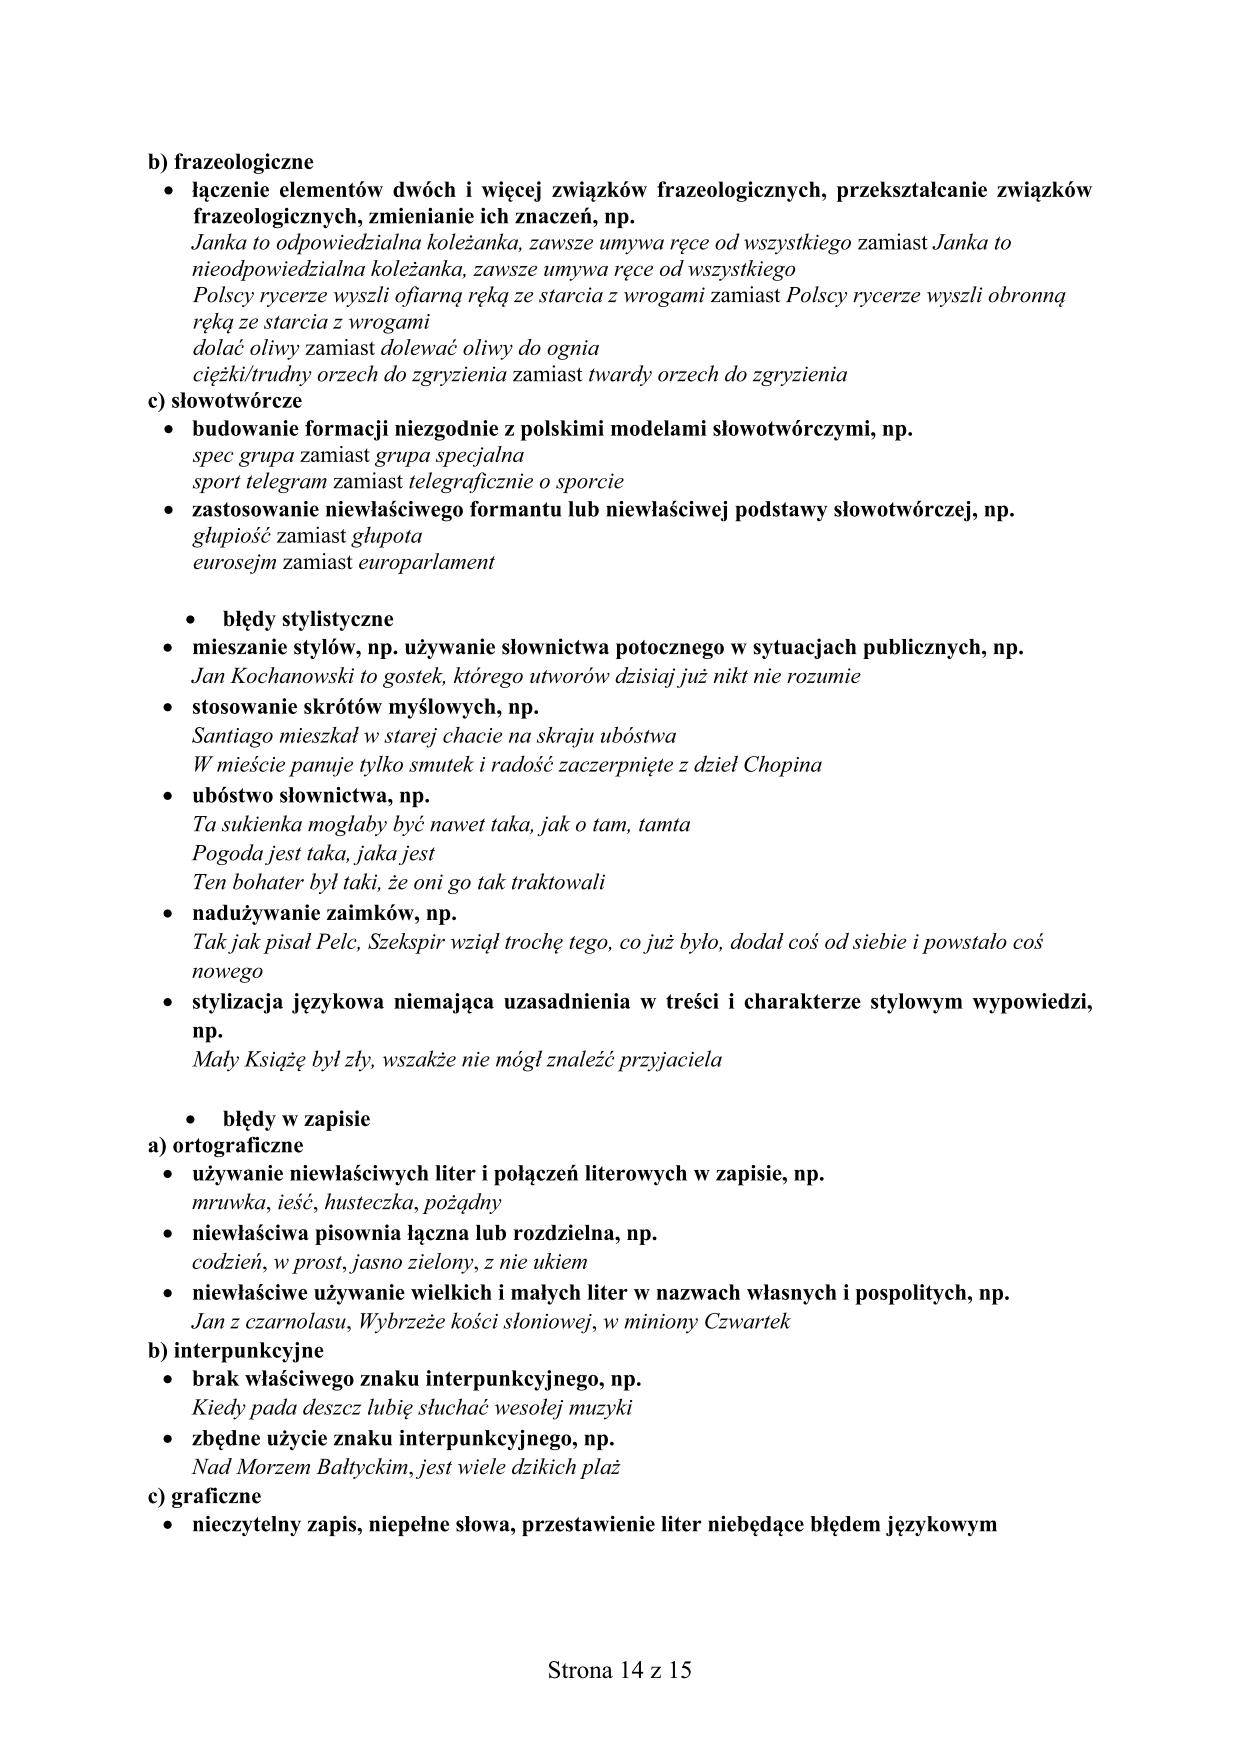 Odpowiedzi-jezyk-polski-egzamin-gimnazjalny-2015-14